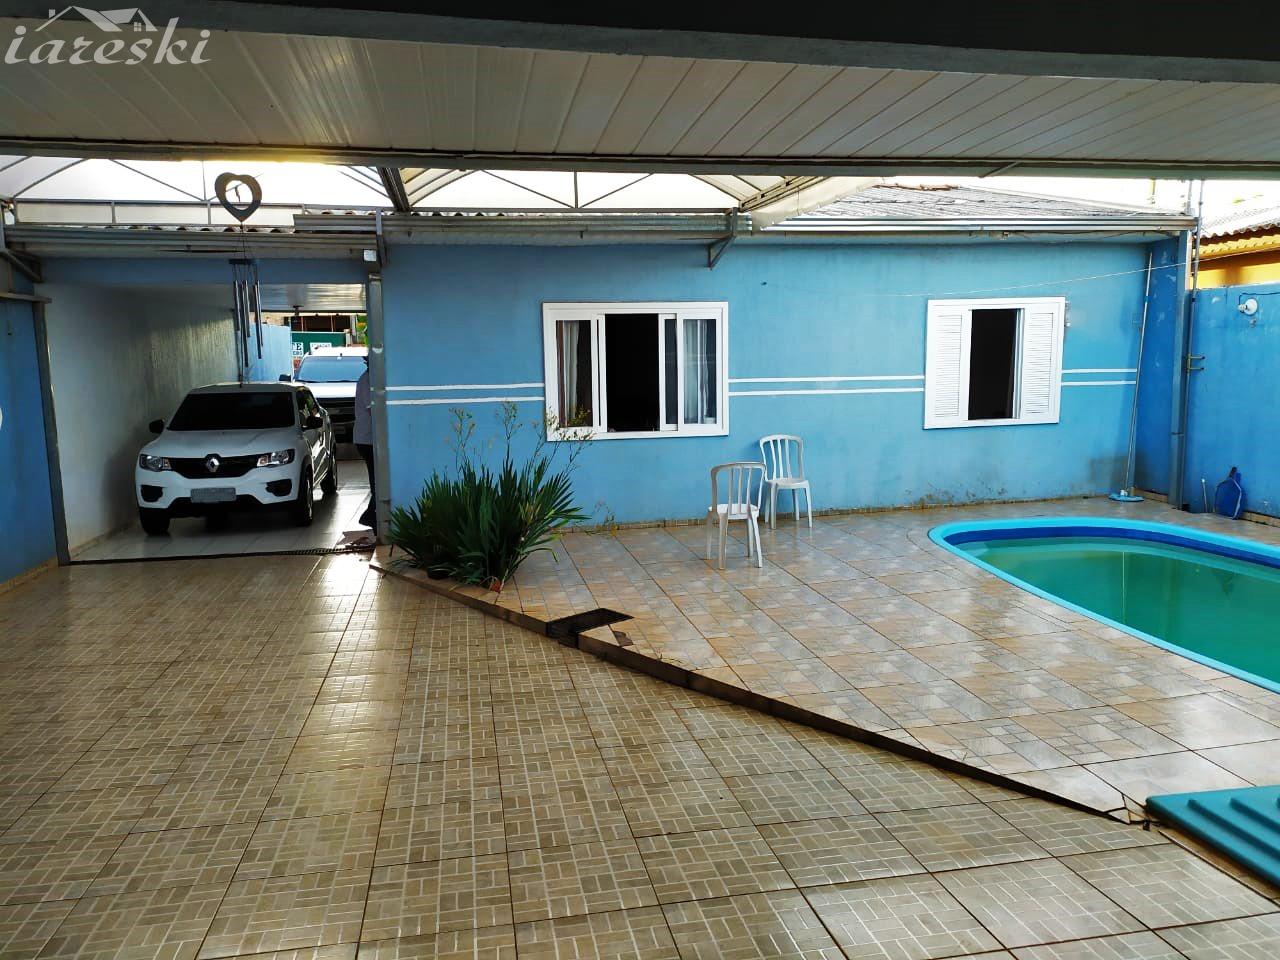 Casa com 2 dormitórios à venda no Jardim Ipê em Foz do Iguaçu/PR